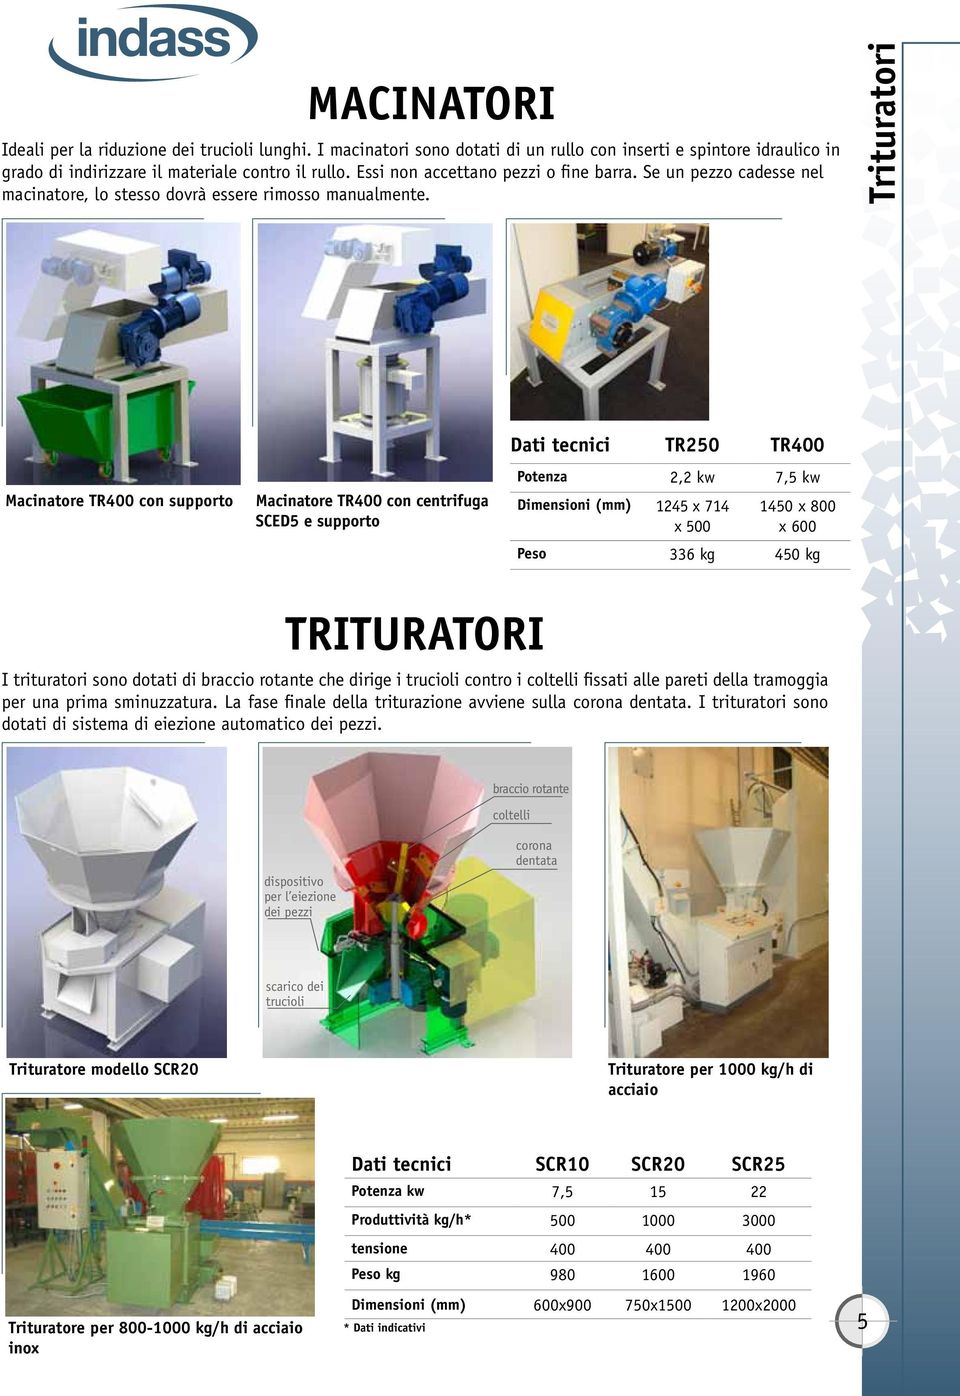 Trituratori Macinatore TR400 con supporto Macinatore TR400 con centrifuga SCED5 e supporto Dati tecnici TR250 TR400 Potenza 2,2 kw 7,5 kw Dimensioni (mm) 1245 x 714 x 500 1450 x 800 x 600 Peso 336 kg